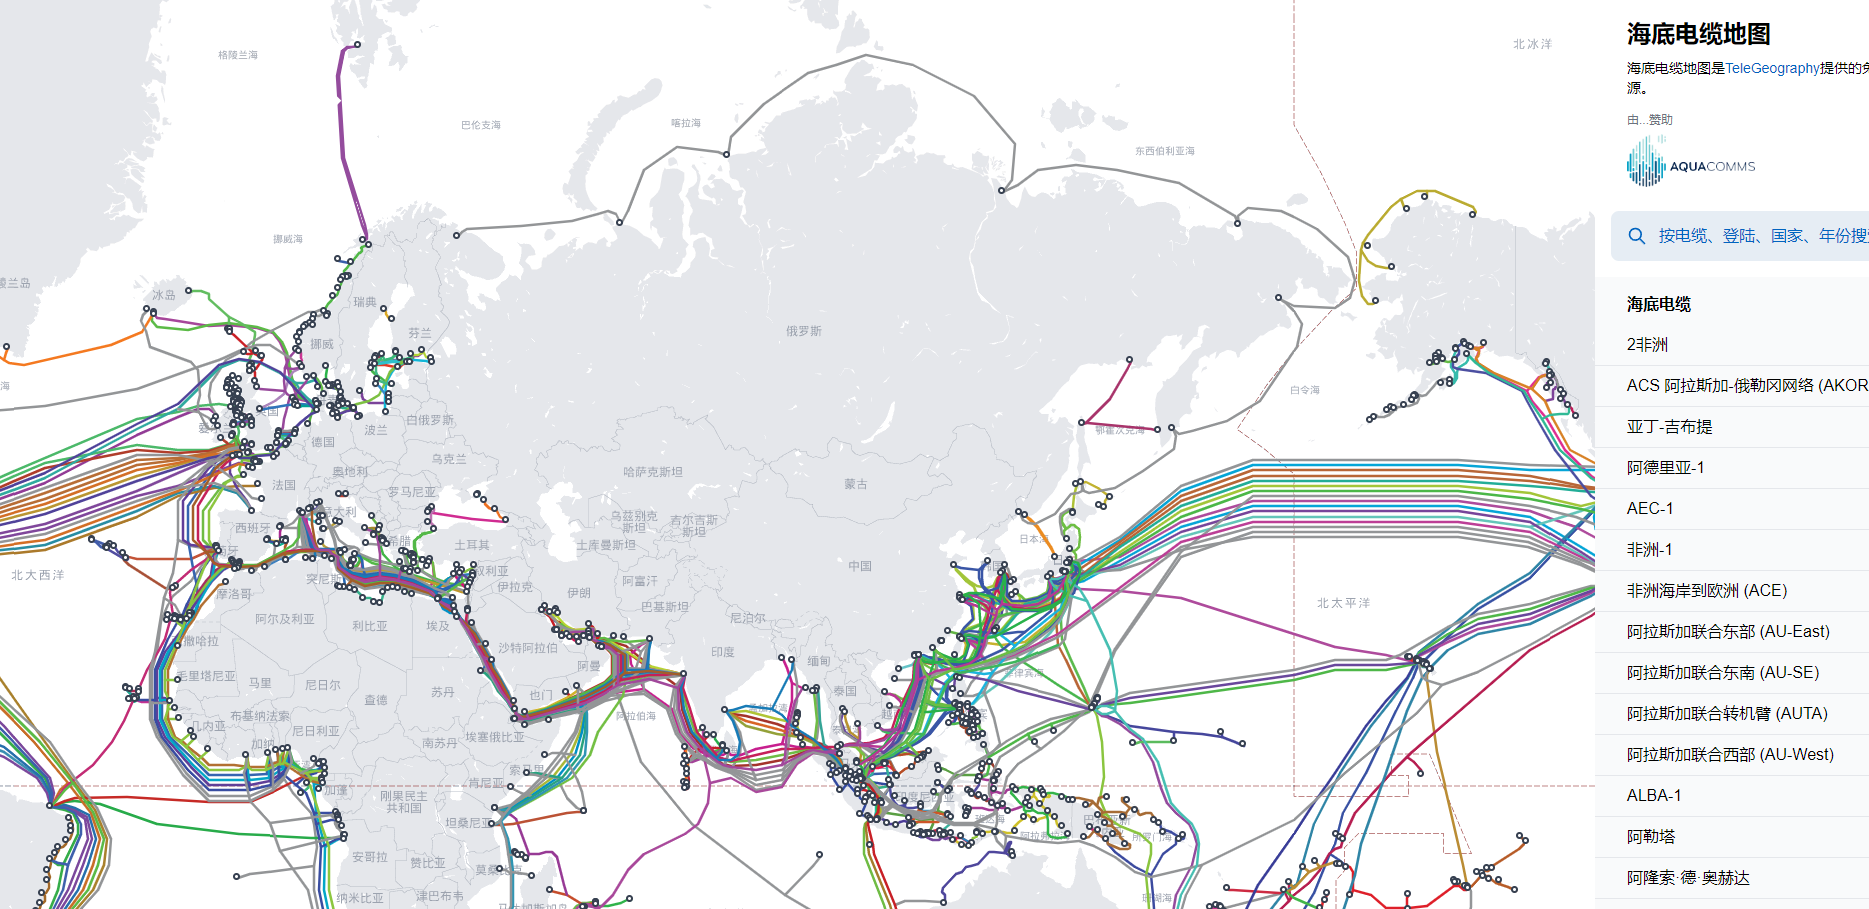 酷站：在线查看全球海底光缆分布地图